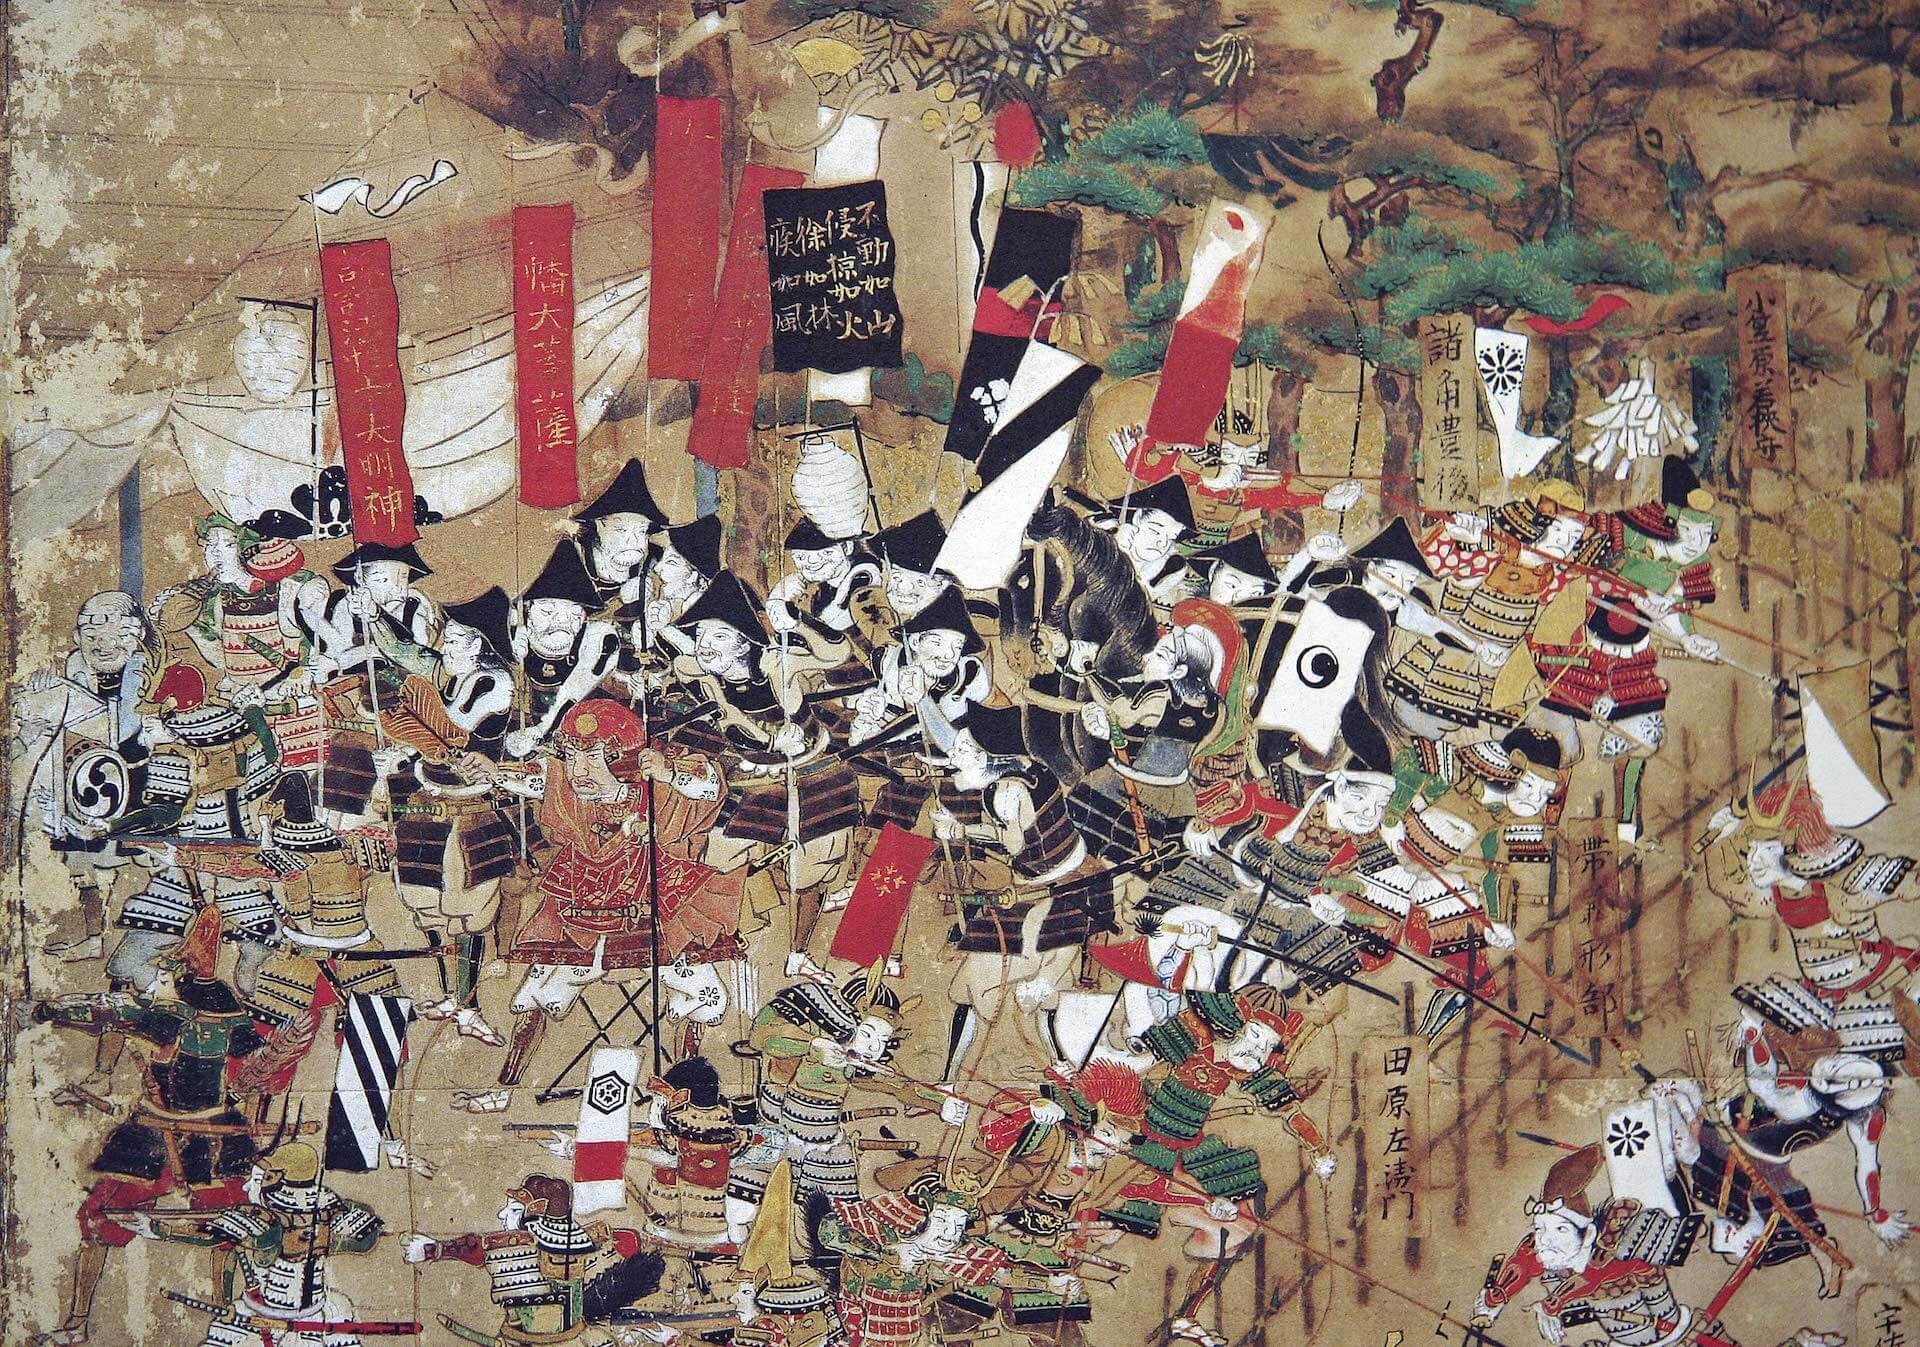 Ikkiuchi Takeda Shingen contra Uesugi Kenshin